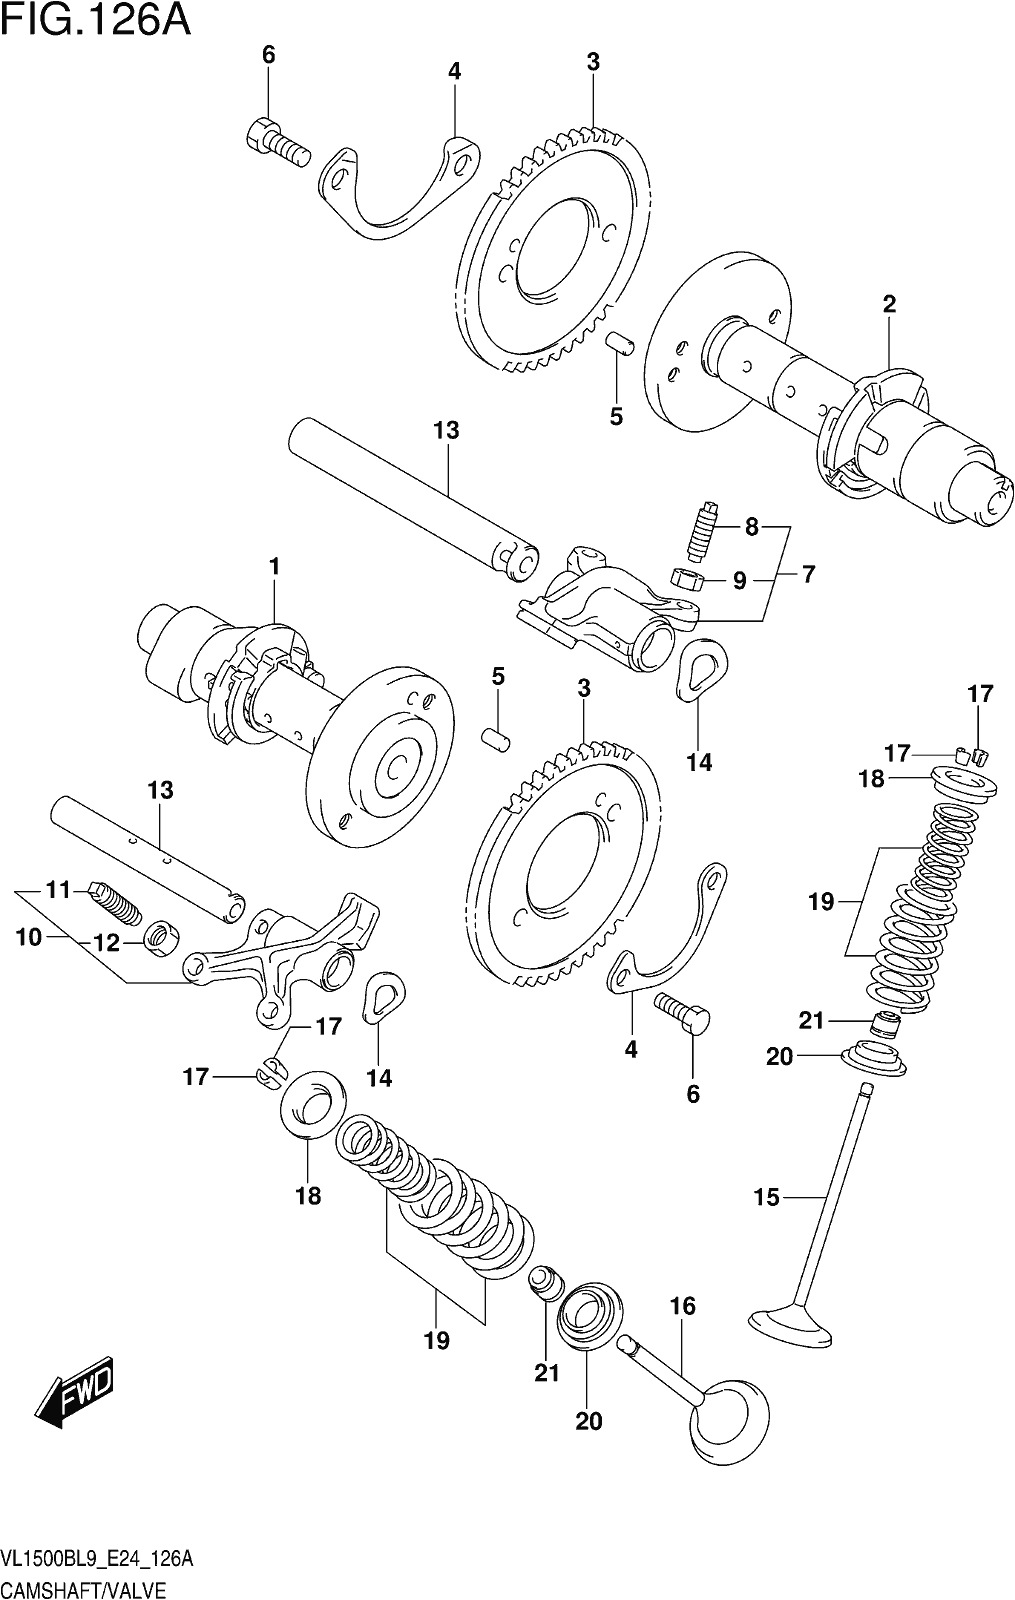 Alle Teile für das Fig. 126a Camshaft/valve des Suzuki VL 1500B 2019